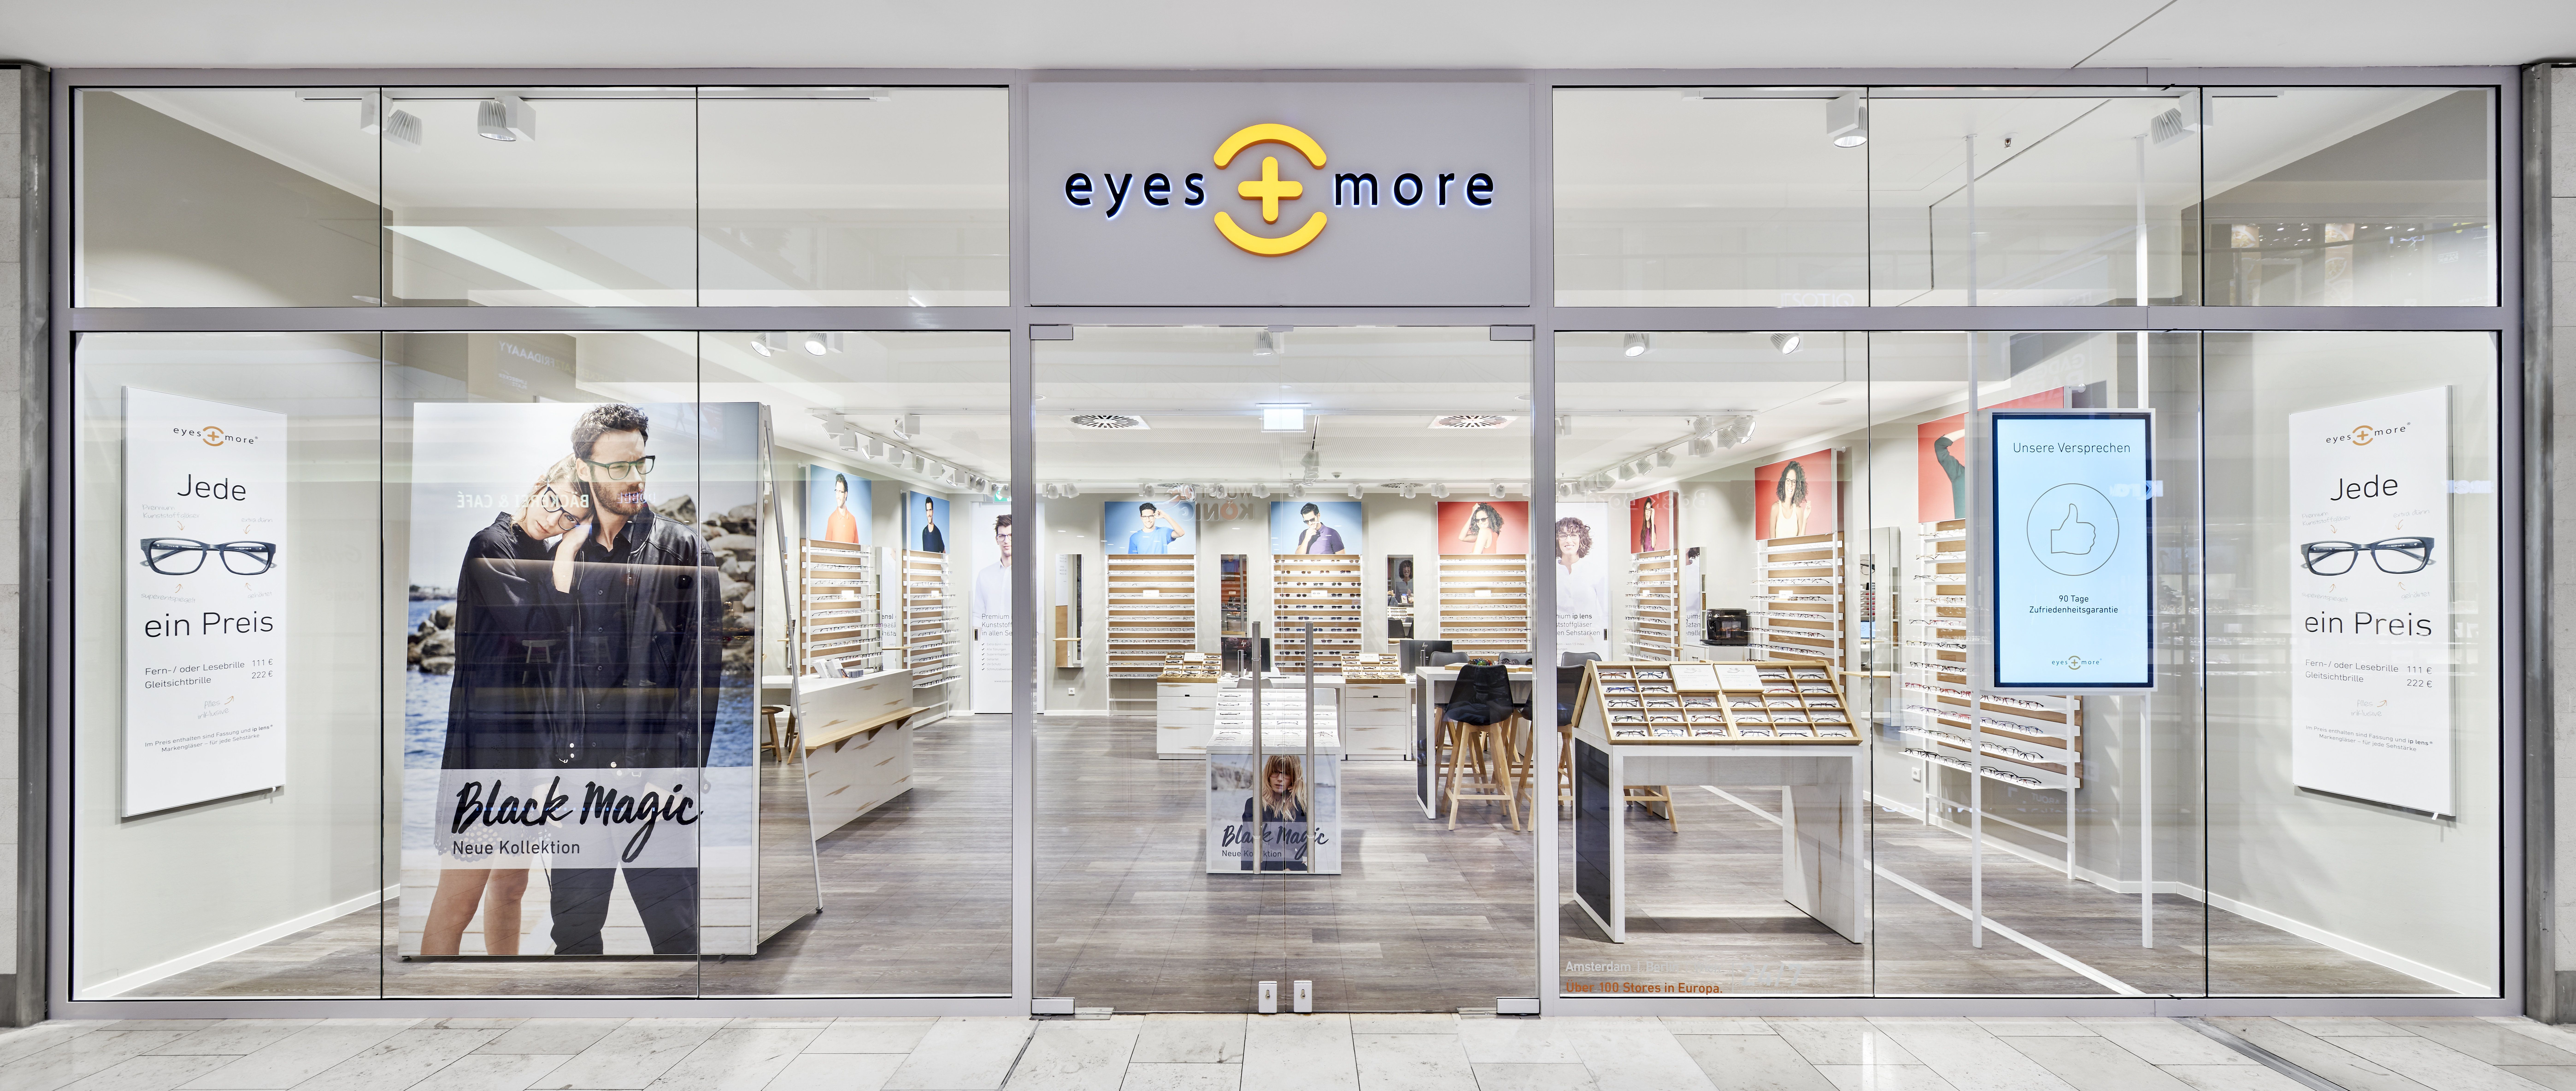 Ausbildung Augenoptiker In M W D Bei Eyes And More Gmbh In Regensburg